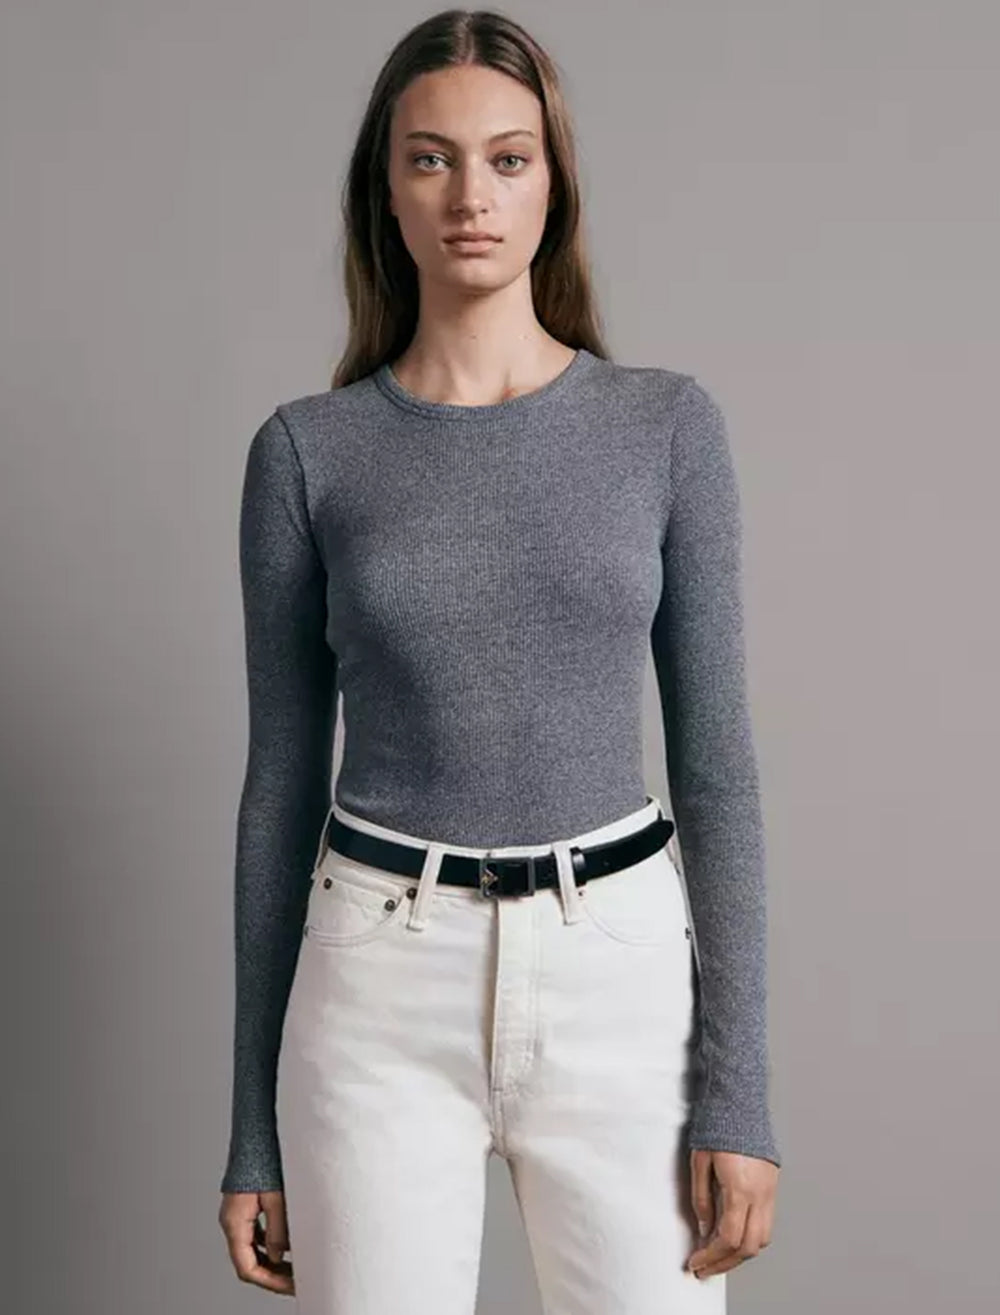 Model wearing Rag & Bone's essential rib long sleeve tee in heather grey.